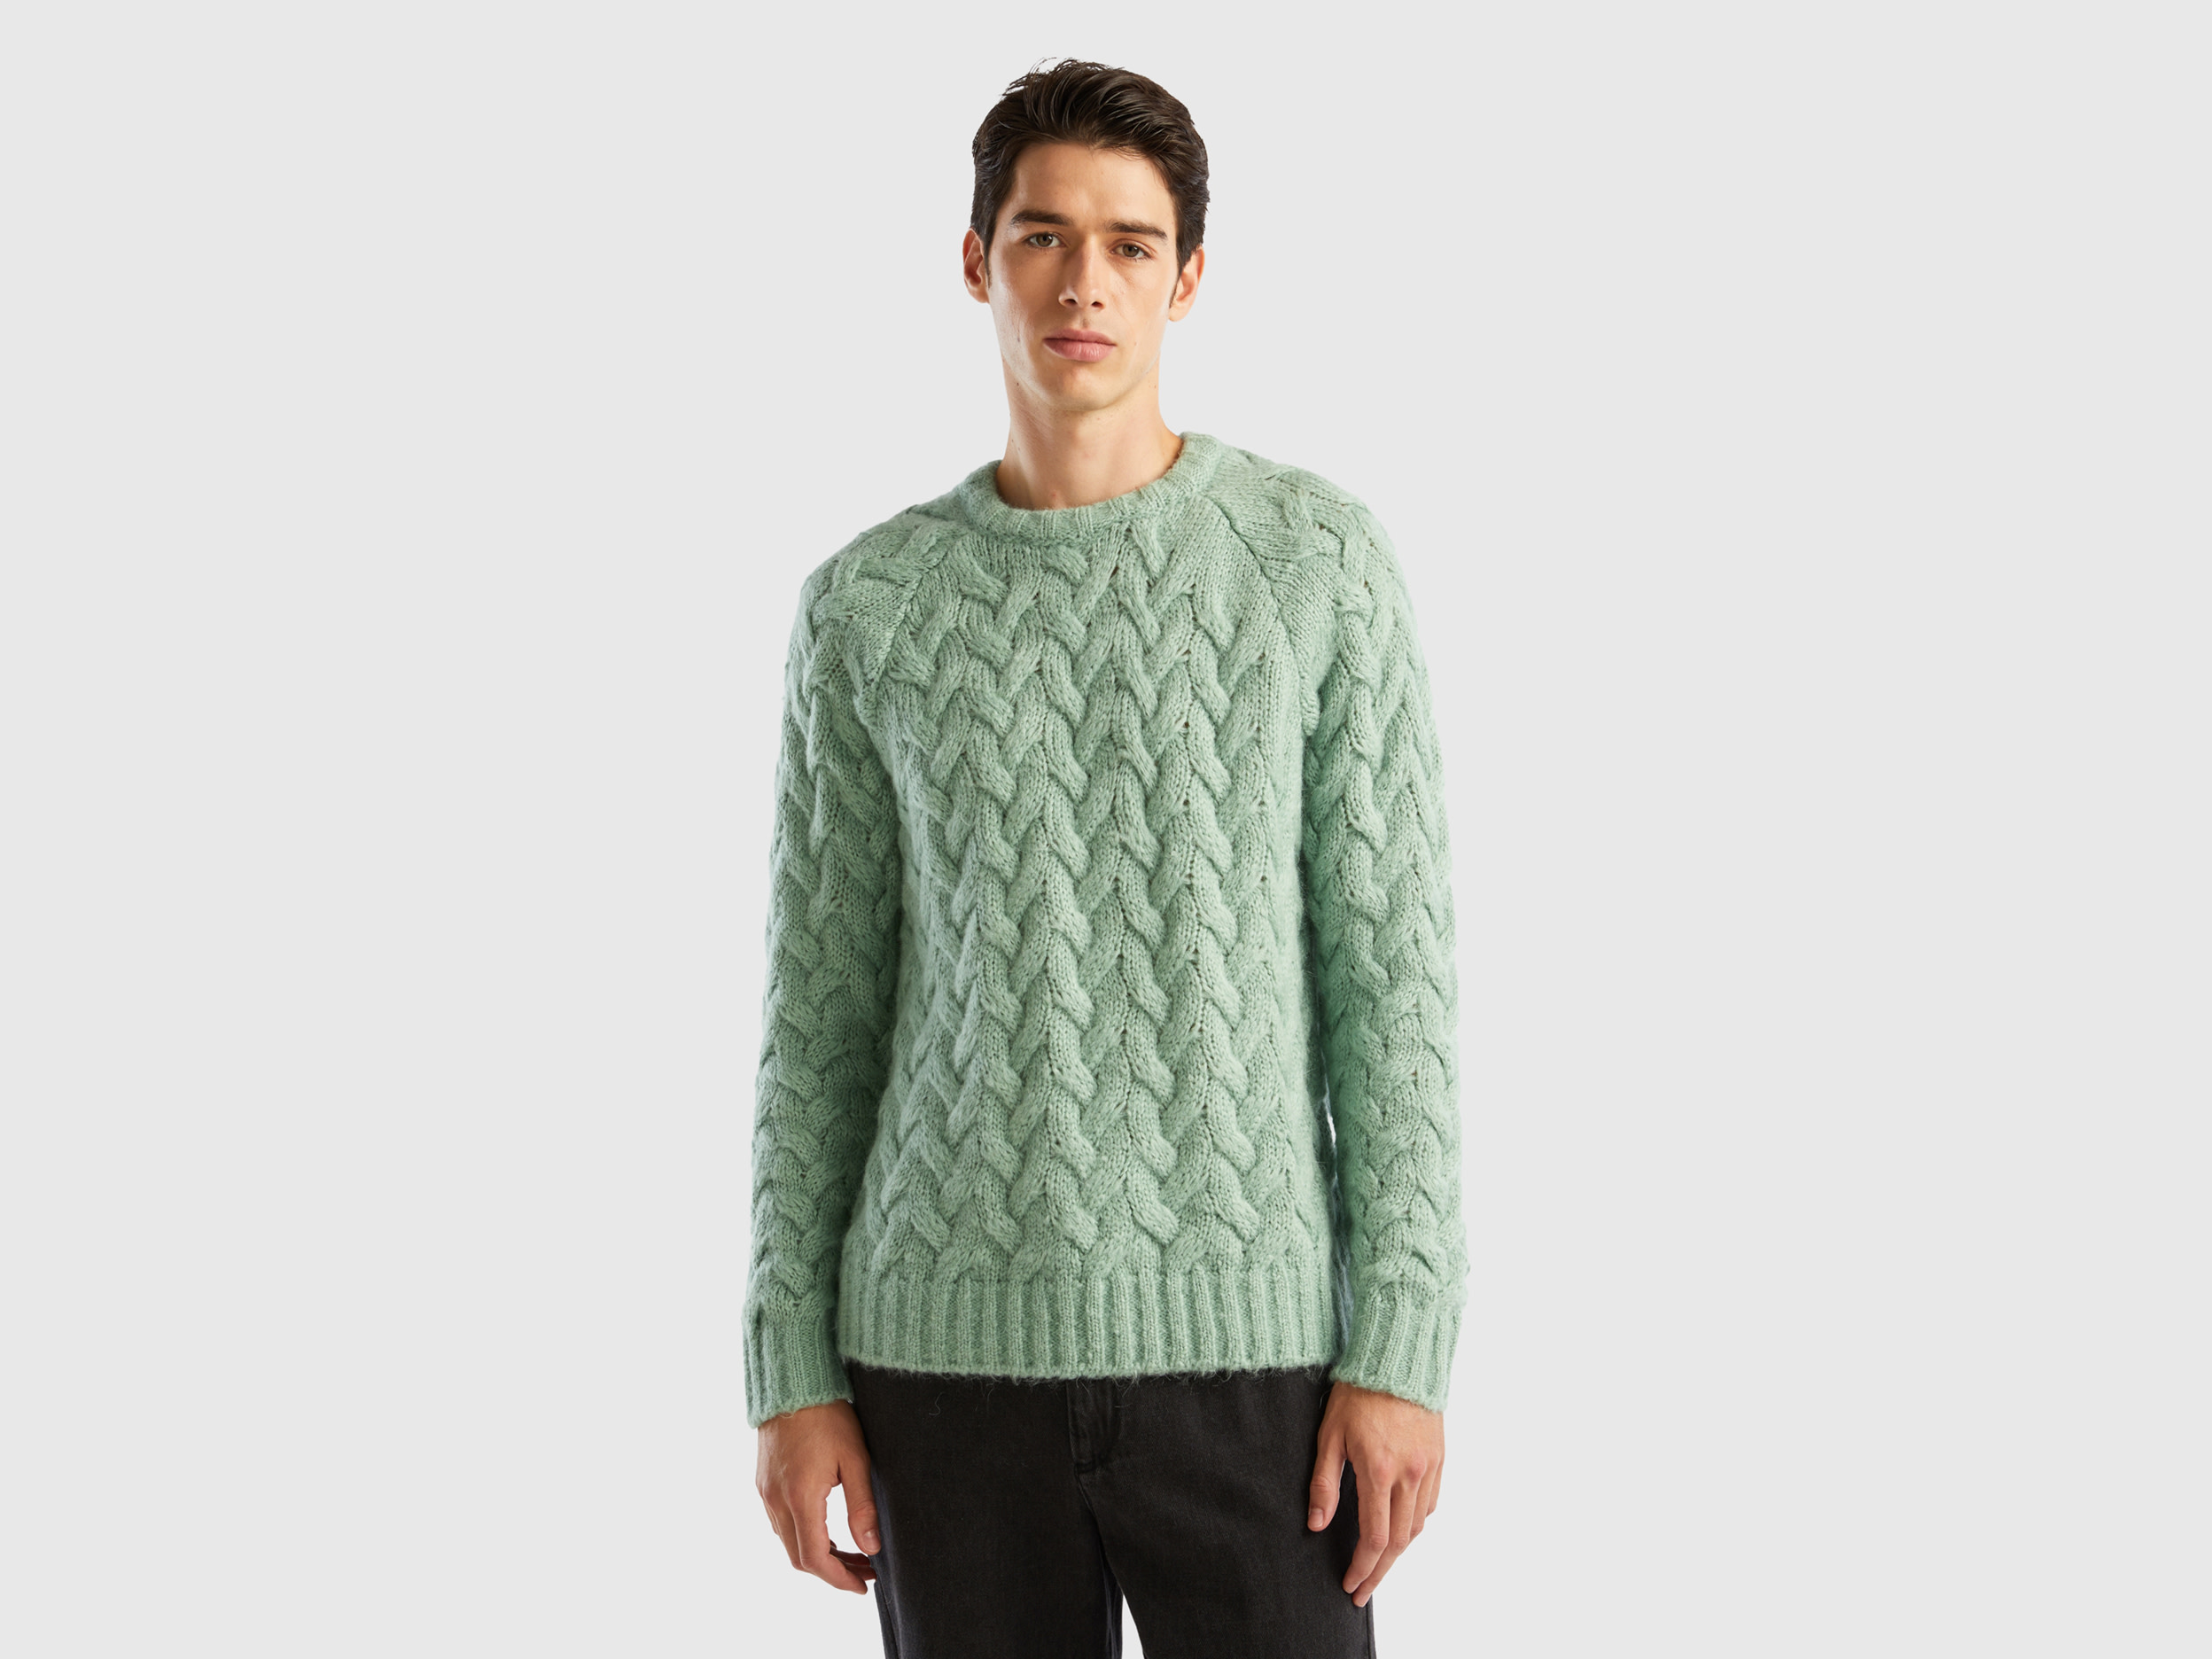 Benetton, Mohair Blend Cable Knit Sweater, size M, Aqua, Men